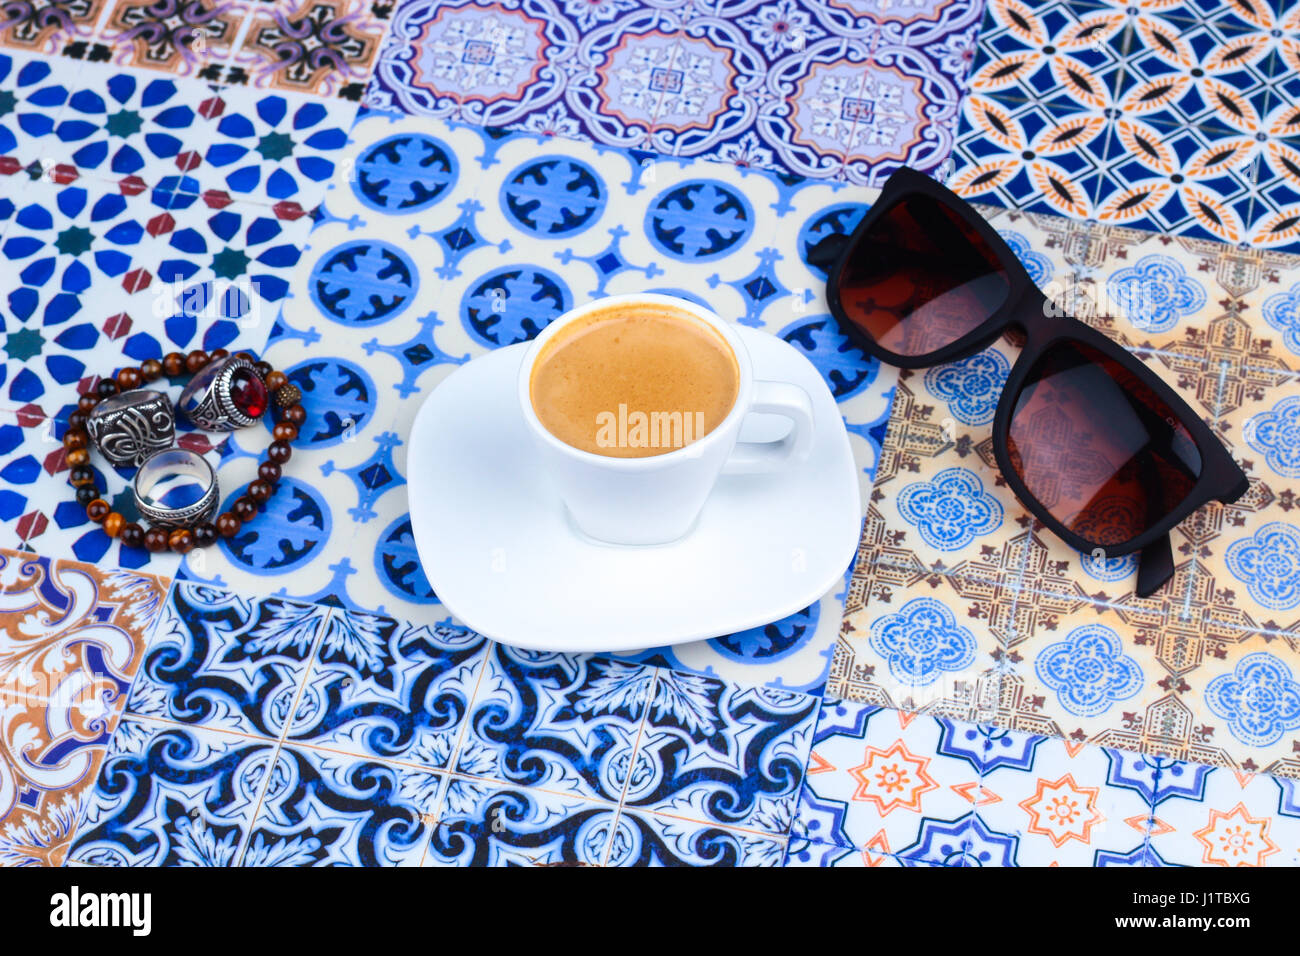 Tasse de café d'Arabie orientale sur un fond coloré / Espresso sur un fond coloré avec des fleurs, bagues et dates Tamr Banque D'Images